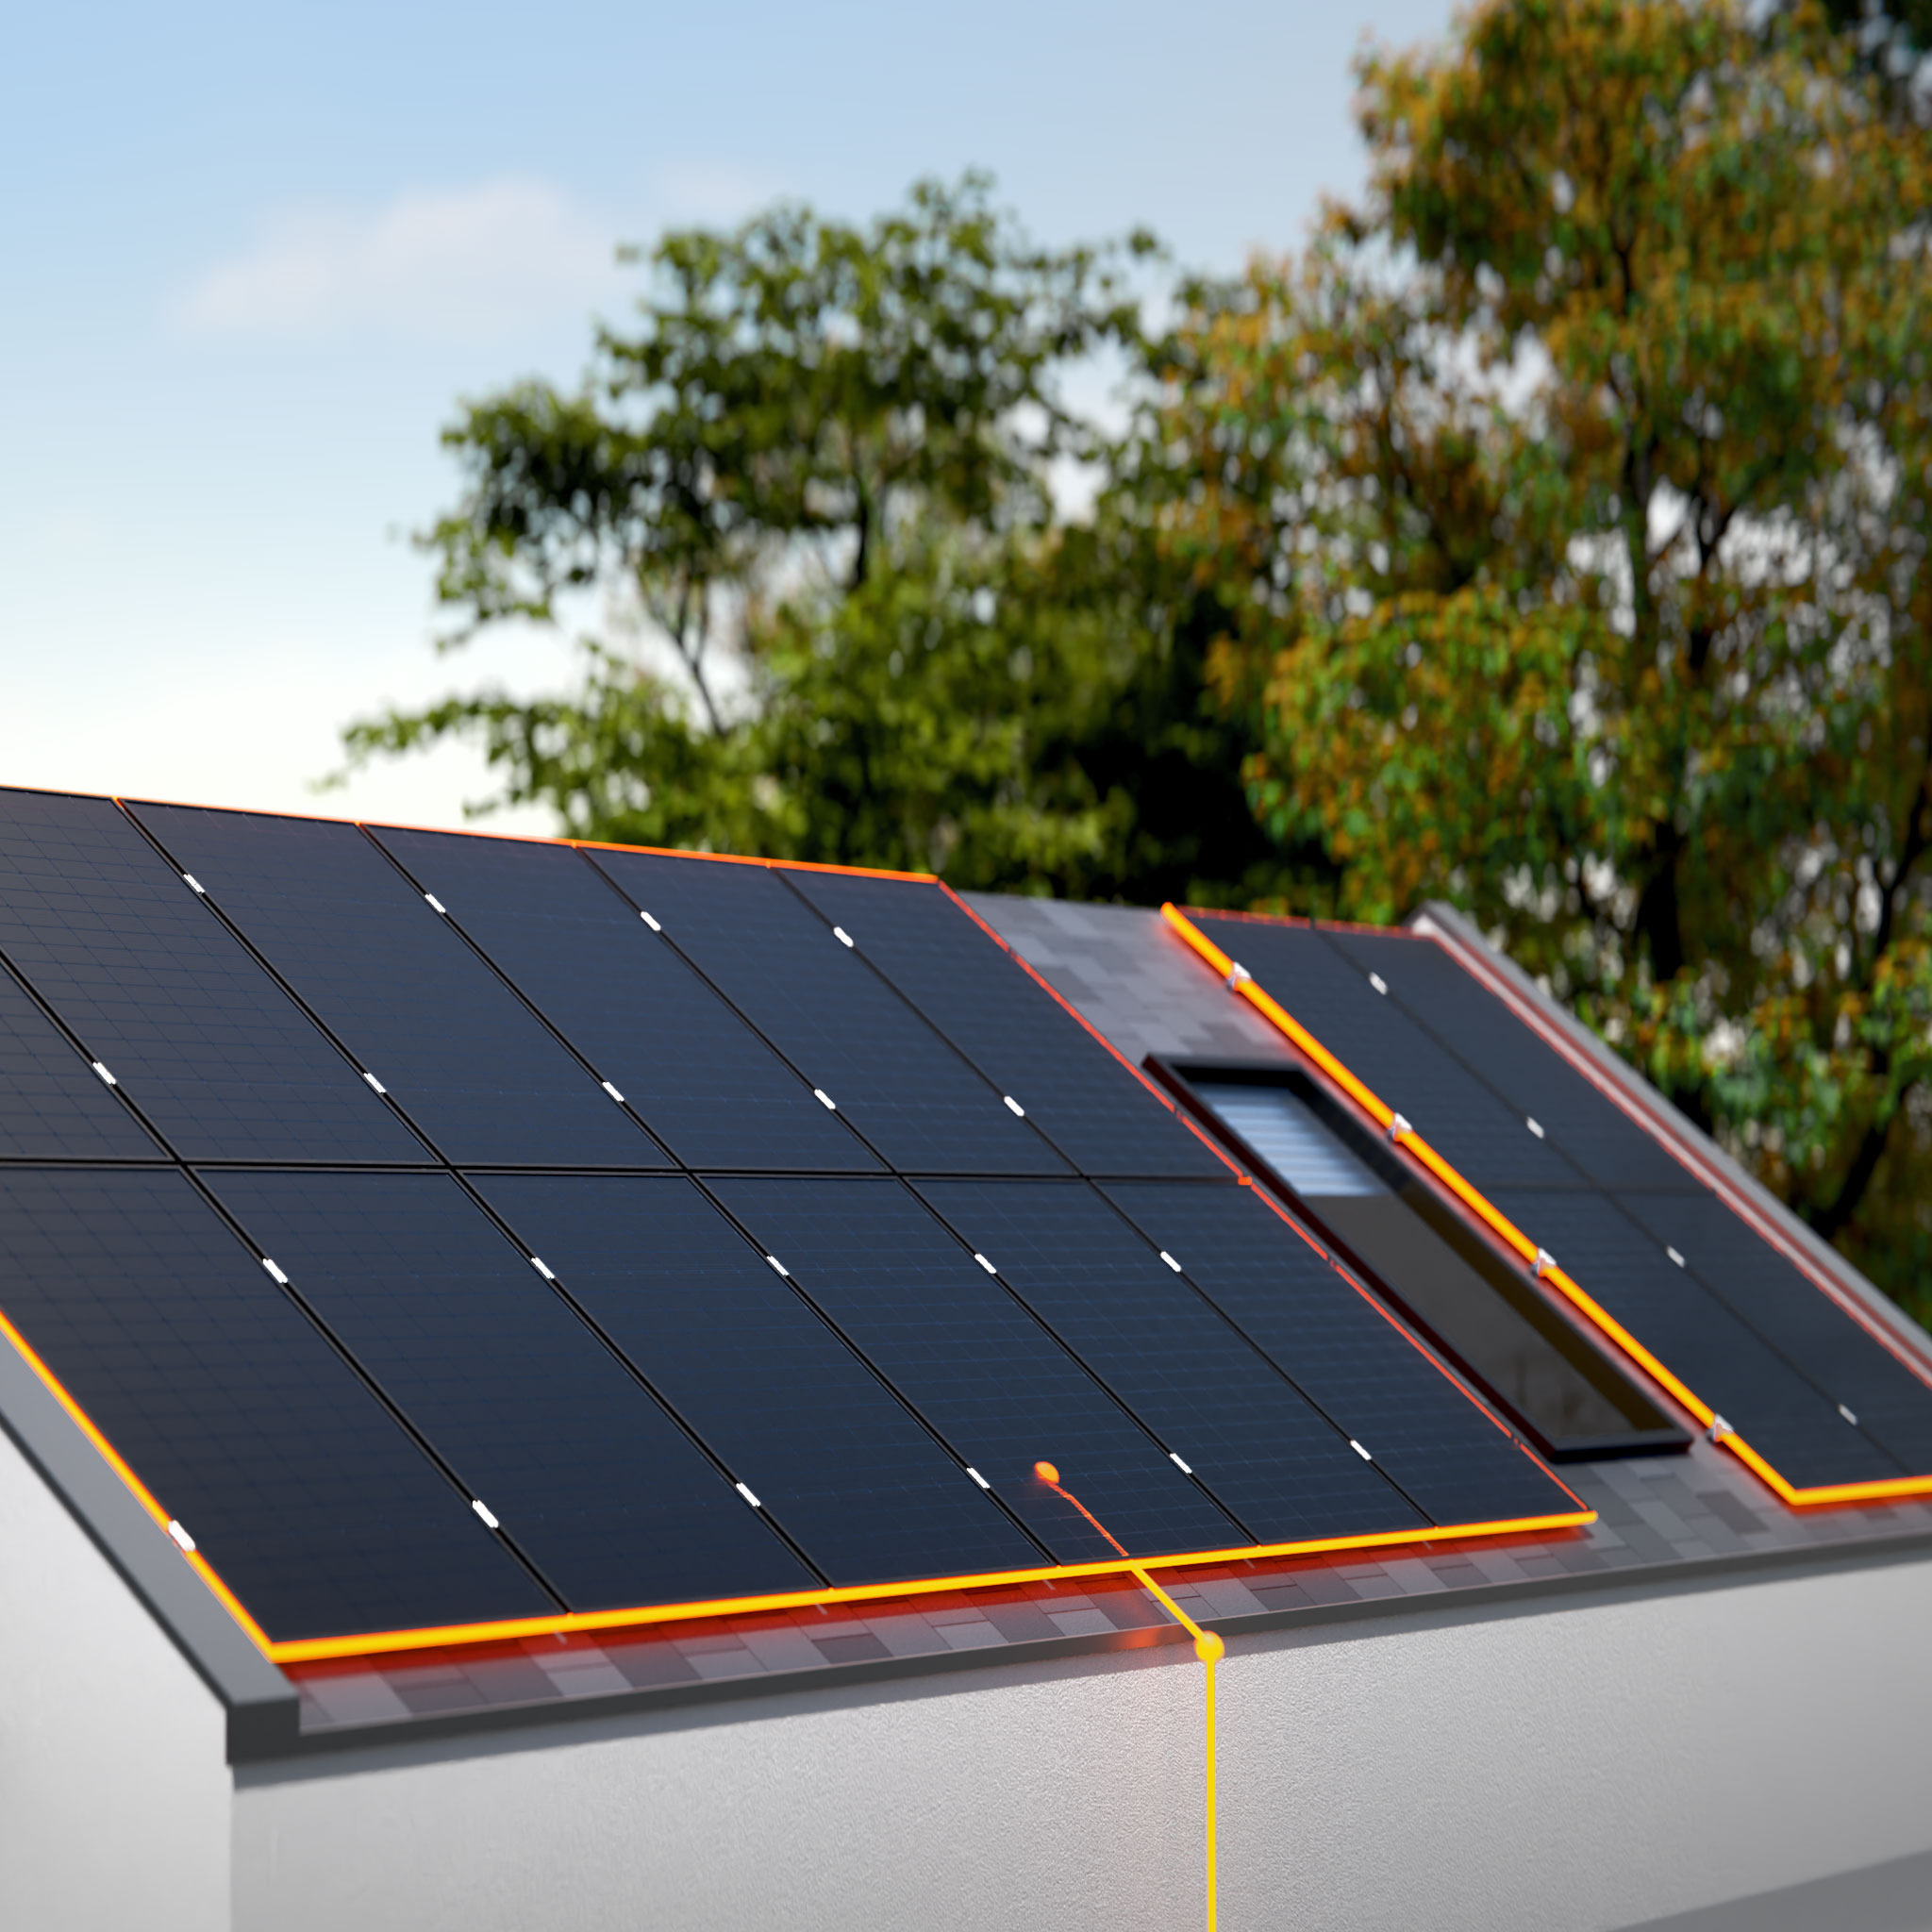 AMPERE.SolarPro PV-Module auf dem Dach als Teil des EKD Energiesystems, Sommermotiv mit grünen Bäumen im Hintergrund